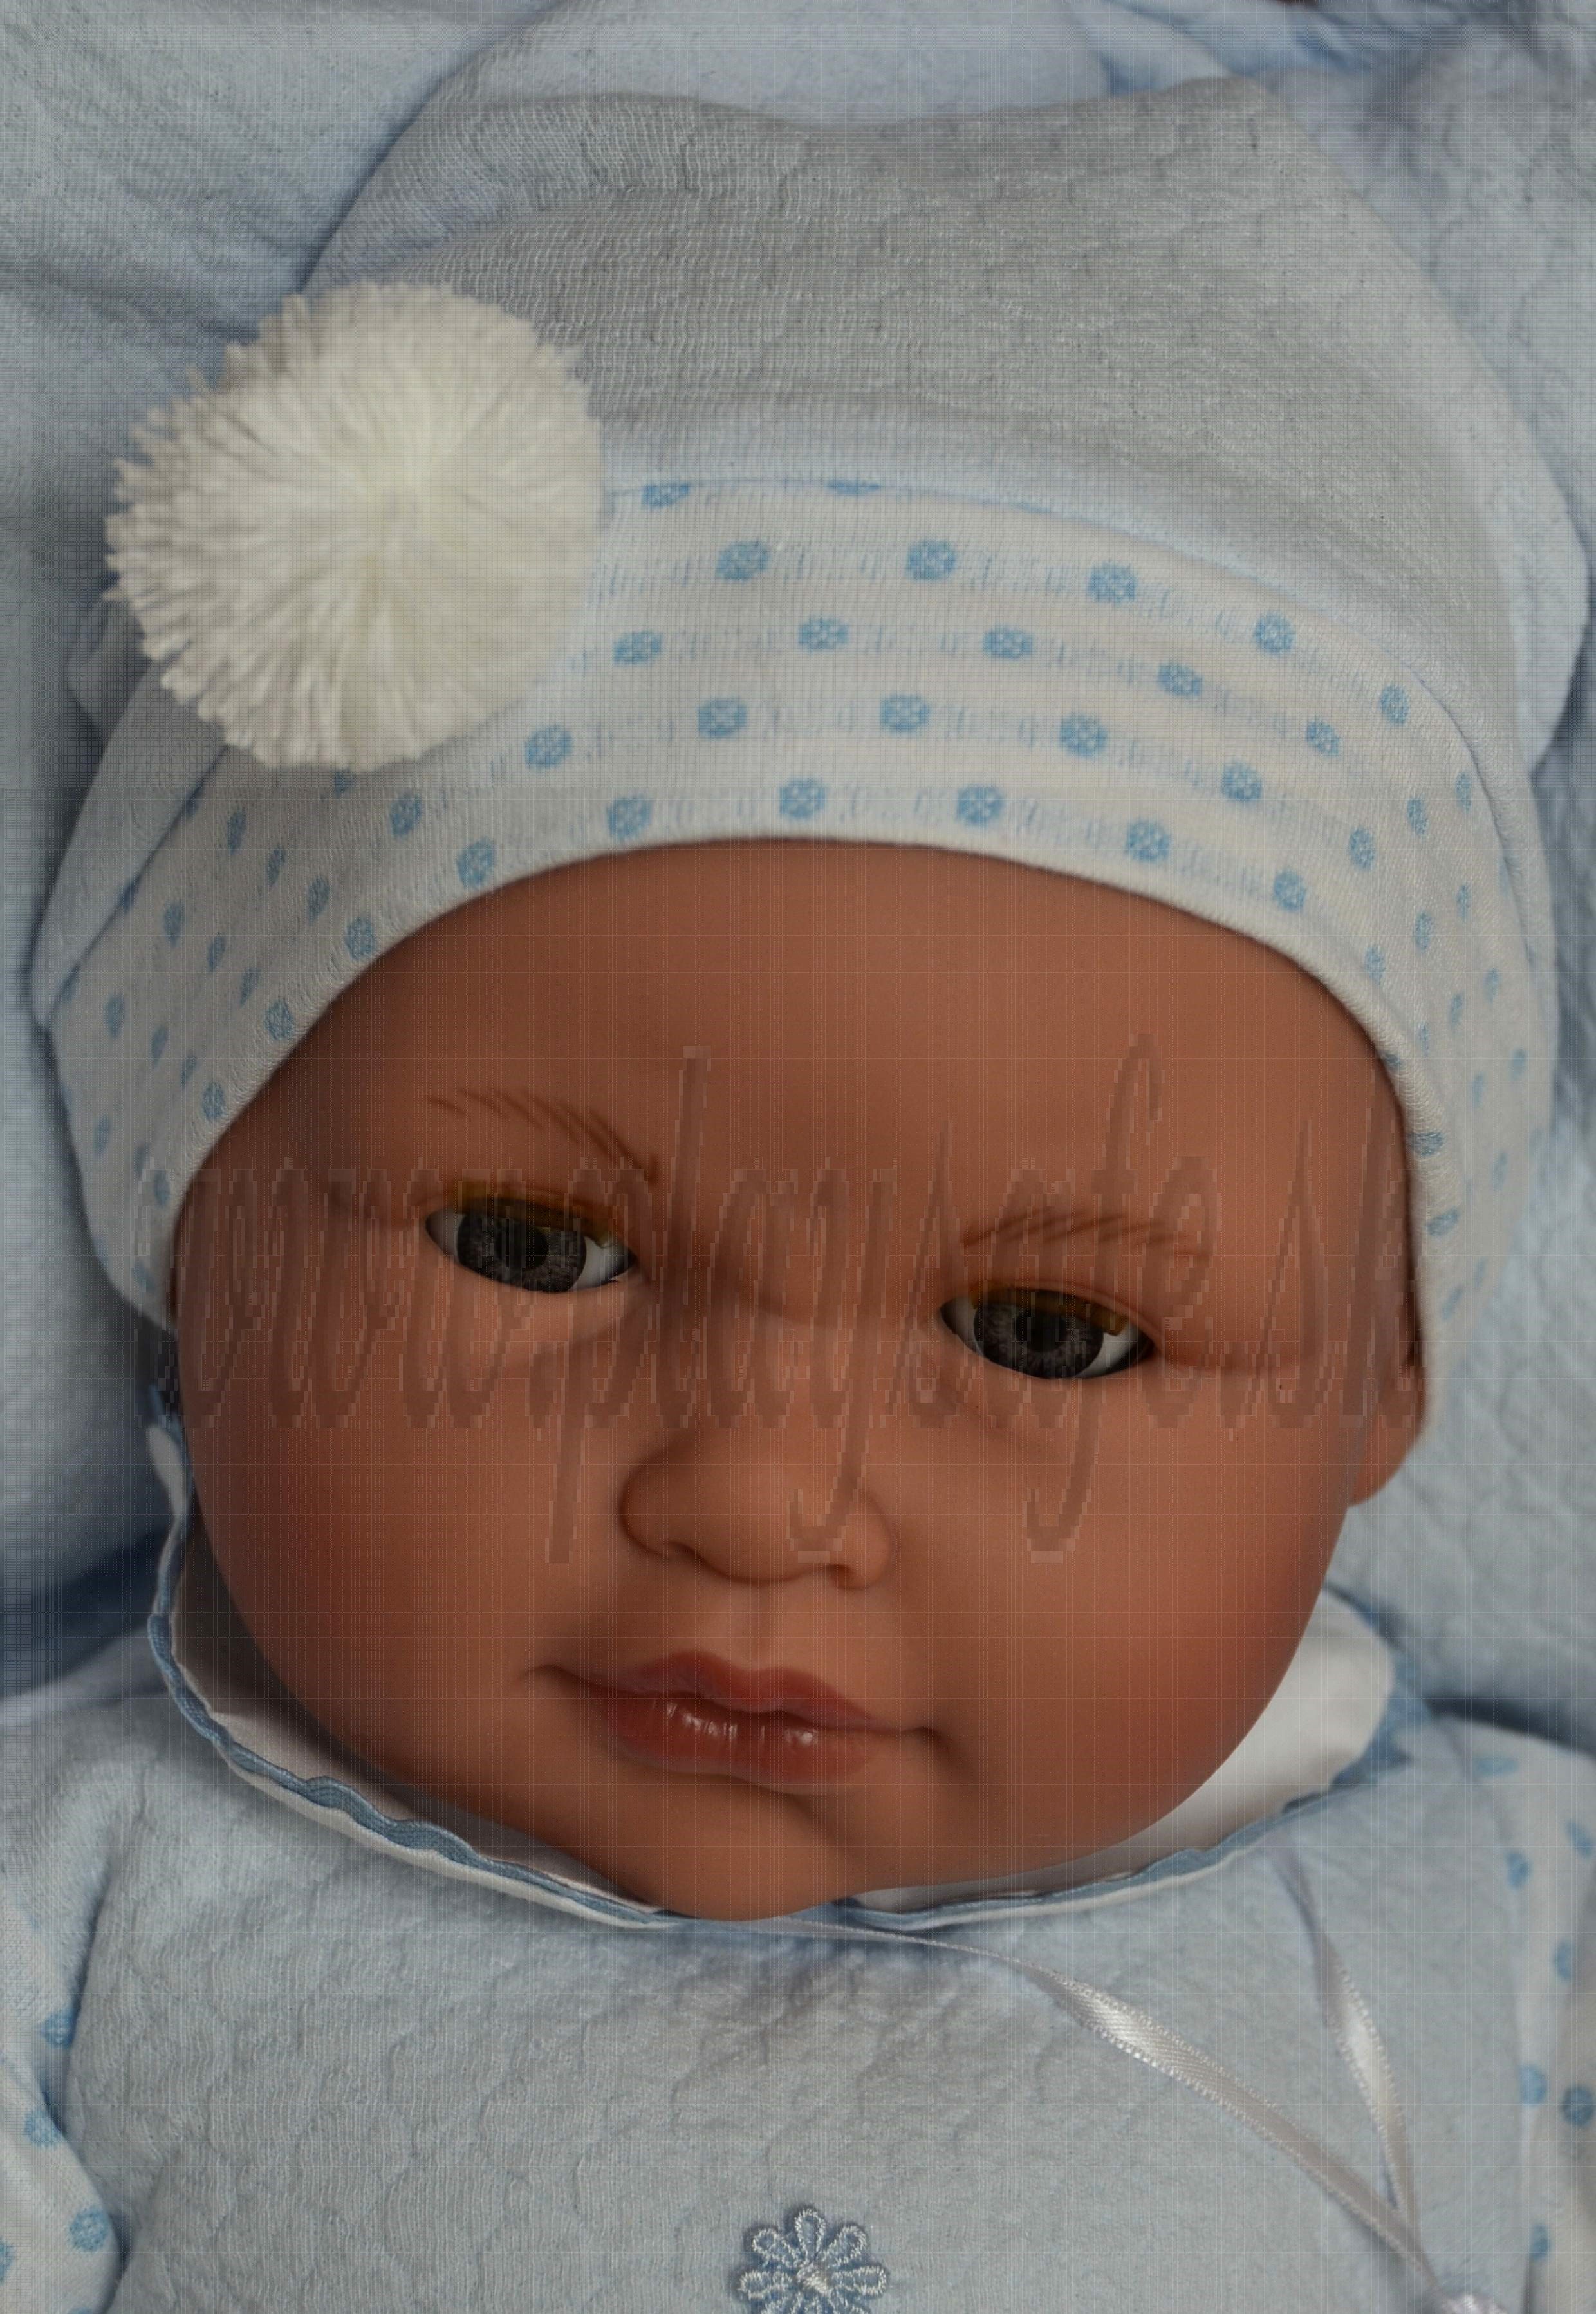 Antonio Juan Zvuková bábika bábätko Lolo žmurkací, 55cm